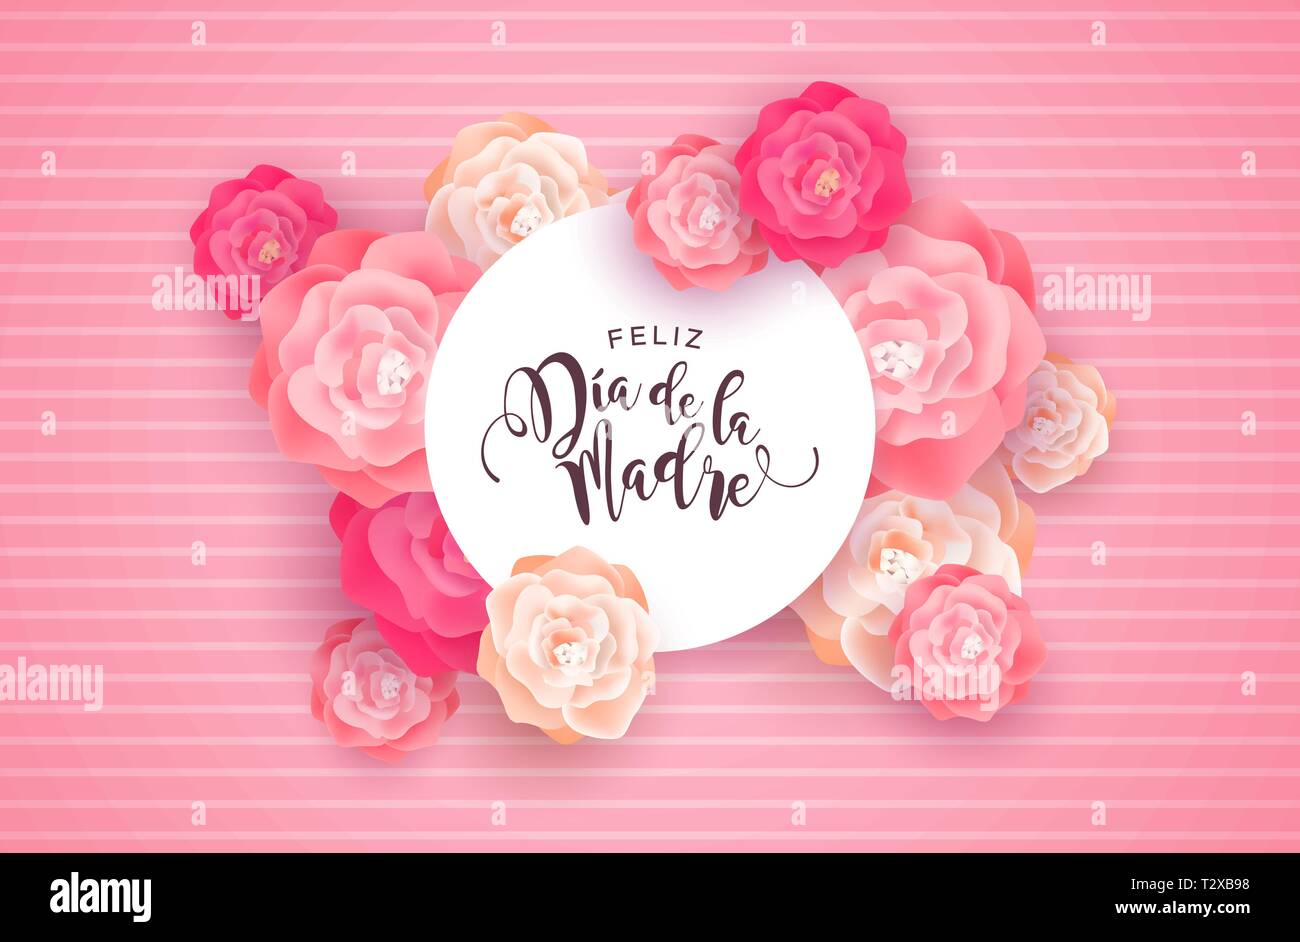 Muttertag Karte Abbildung für besondere Mom Urlaub in spanischer Sprache. Schöner Frühling rosa Blüten auf rosa Hintergrund mit Papier unterschreiben zitieren. Stock Vektor